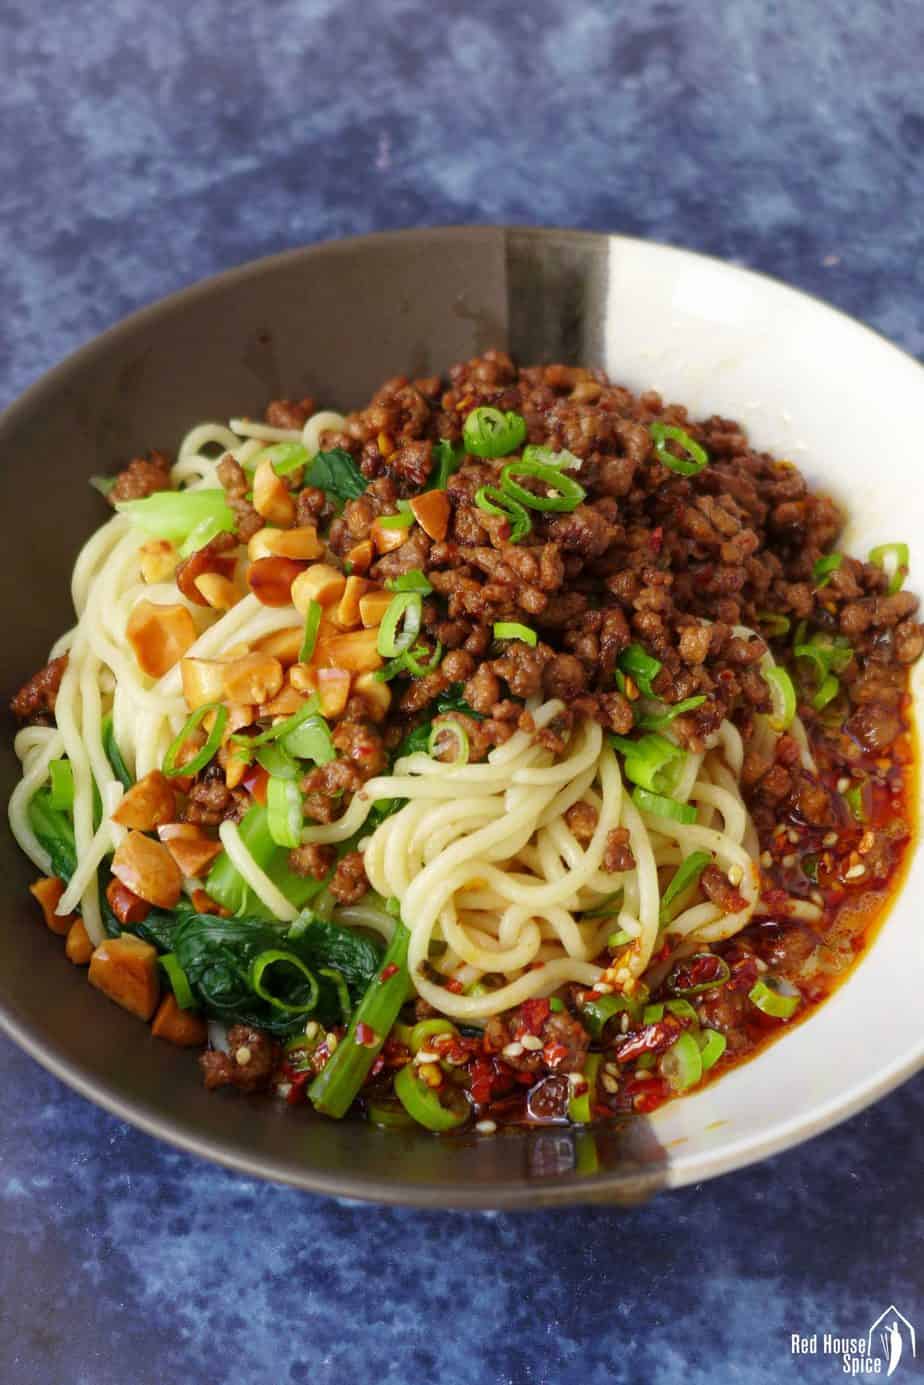 Spicy Sichuan (dan dan) noodles